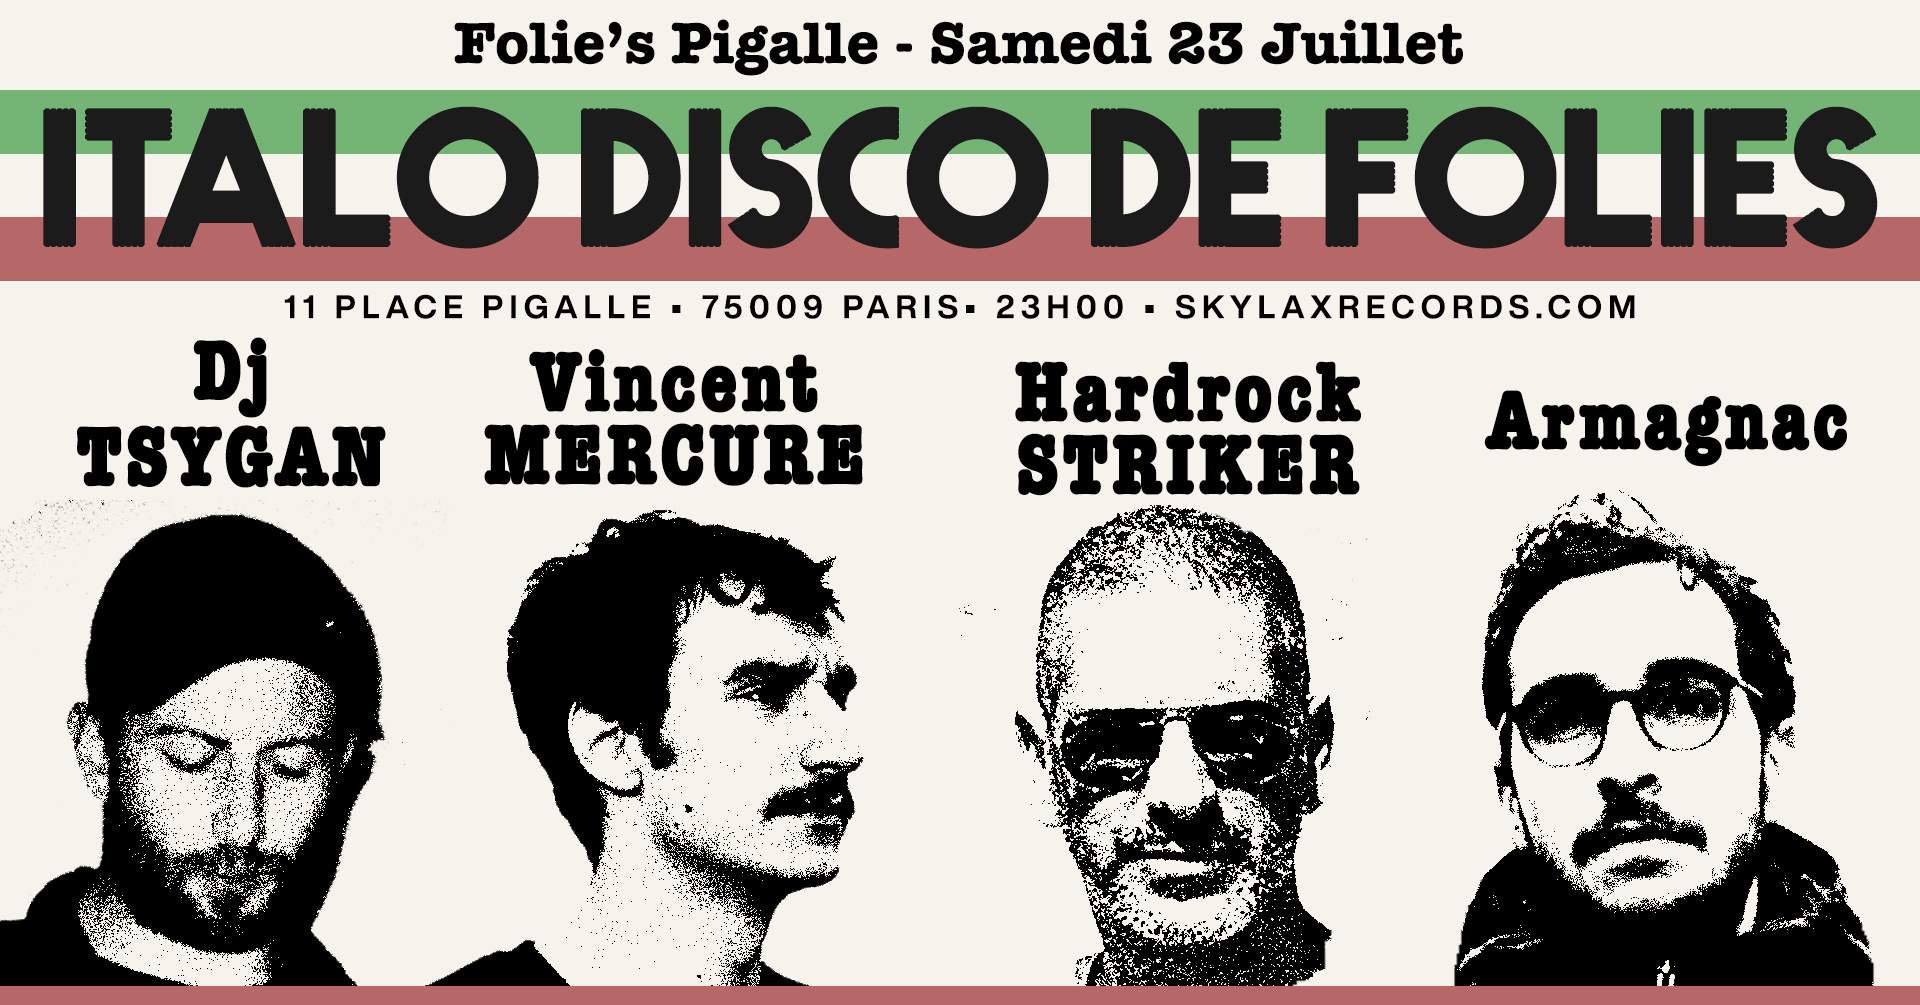 Italo Disco de Folies with Hardrock Striker, DJ Tsygan, Armagnac & Vincent Mercure - フライヤー表